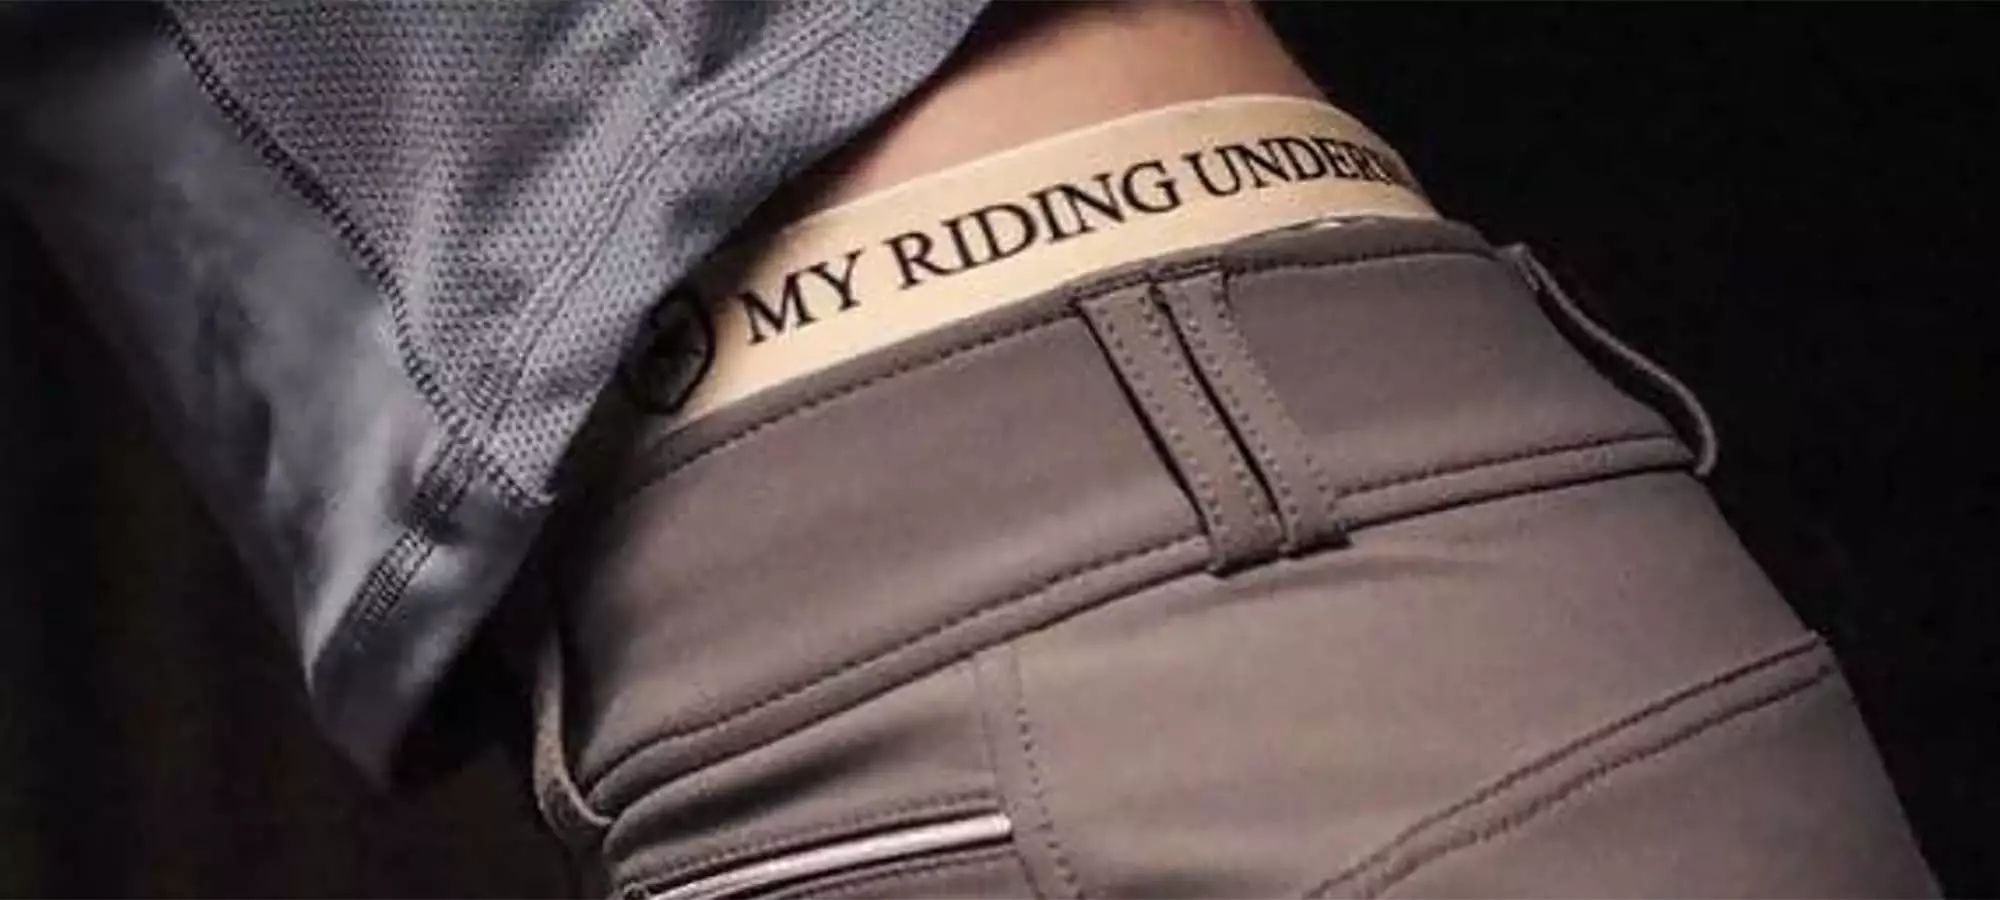 My Riding Underwear